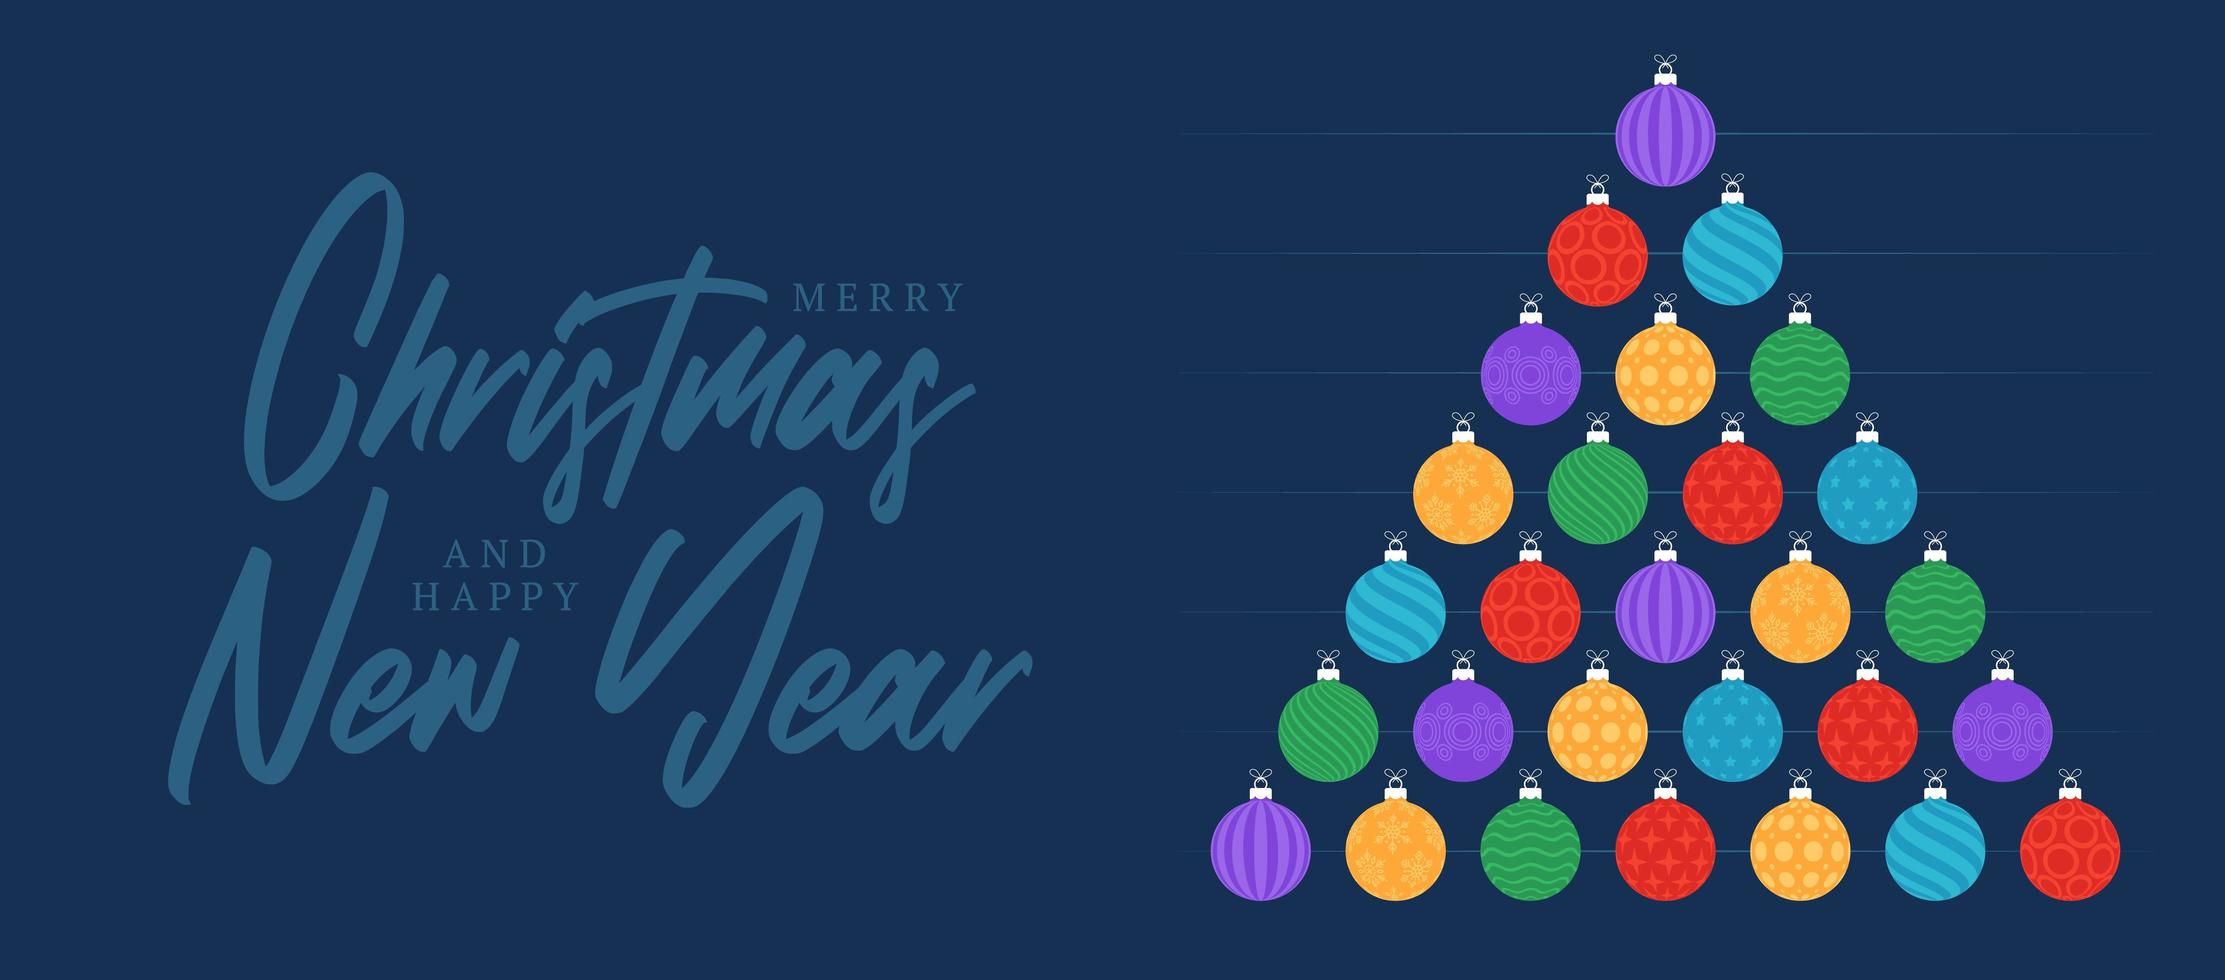 Weihnachten und Neujahrsgruß flache Karikaturkarte. kreativer Weihnachtsbaum machte bunte Kugeln Kugeln auf blauem Hintergrund für Weihnachten und Neujahrsfeier. vektor